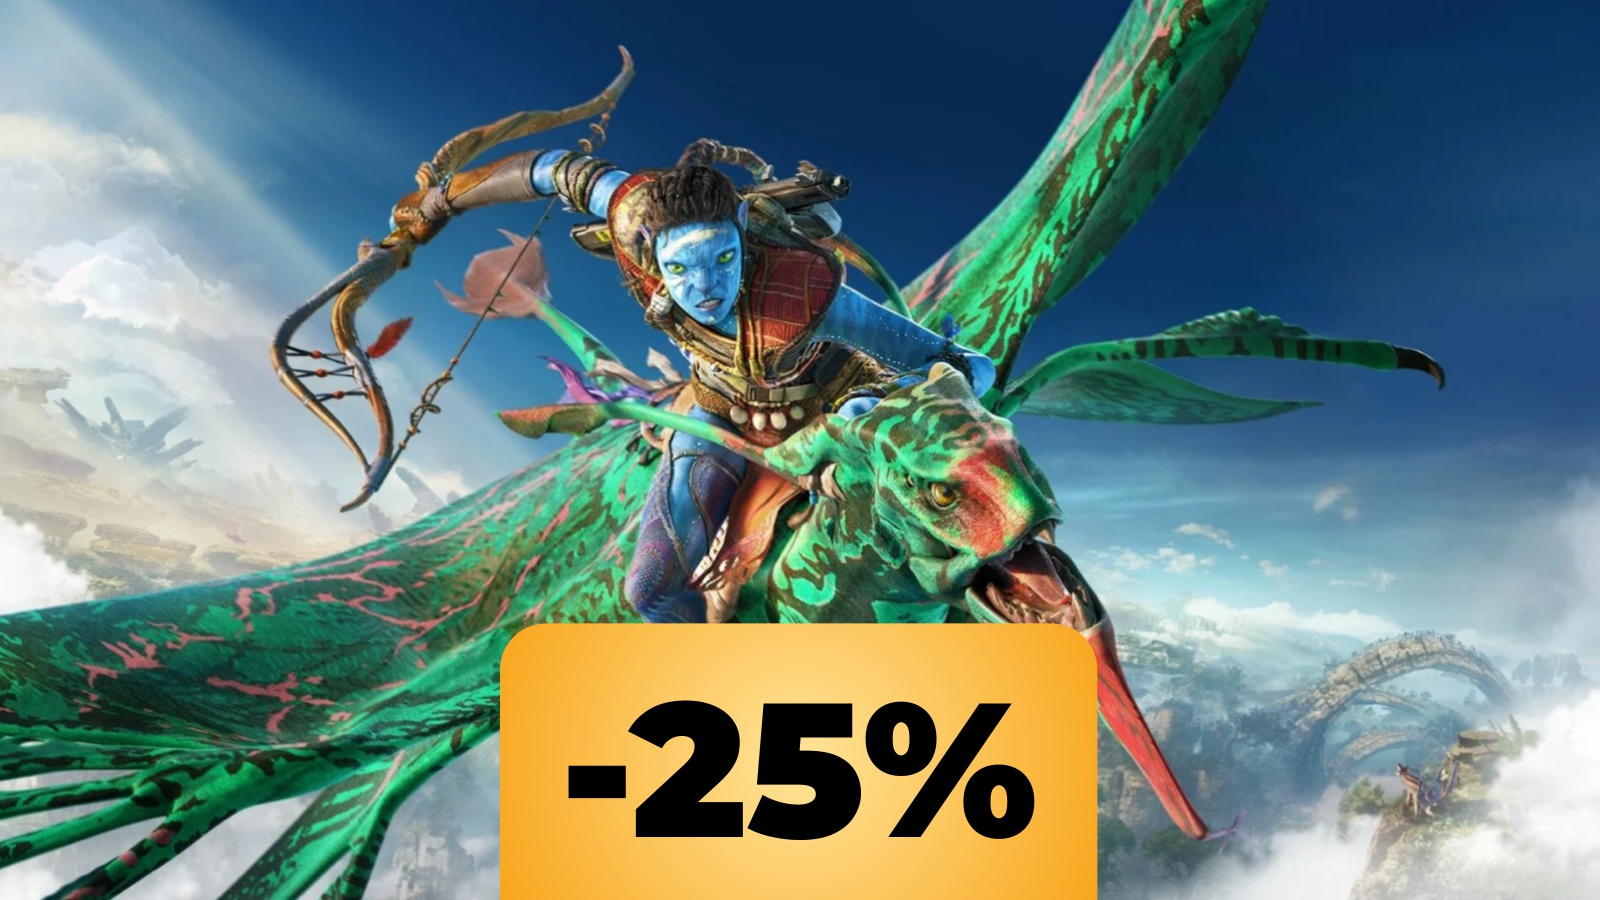 Avatar: Frontiers of Pandora per PS5 e Xbox cala già di prezzo su Amazon, poco dopo il lancio